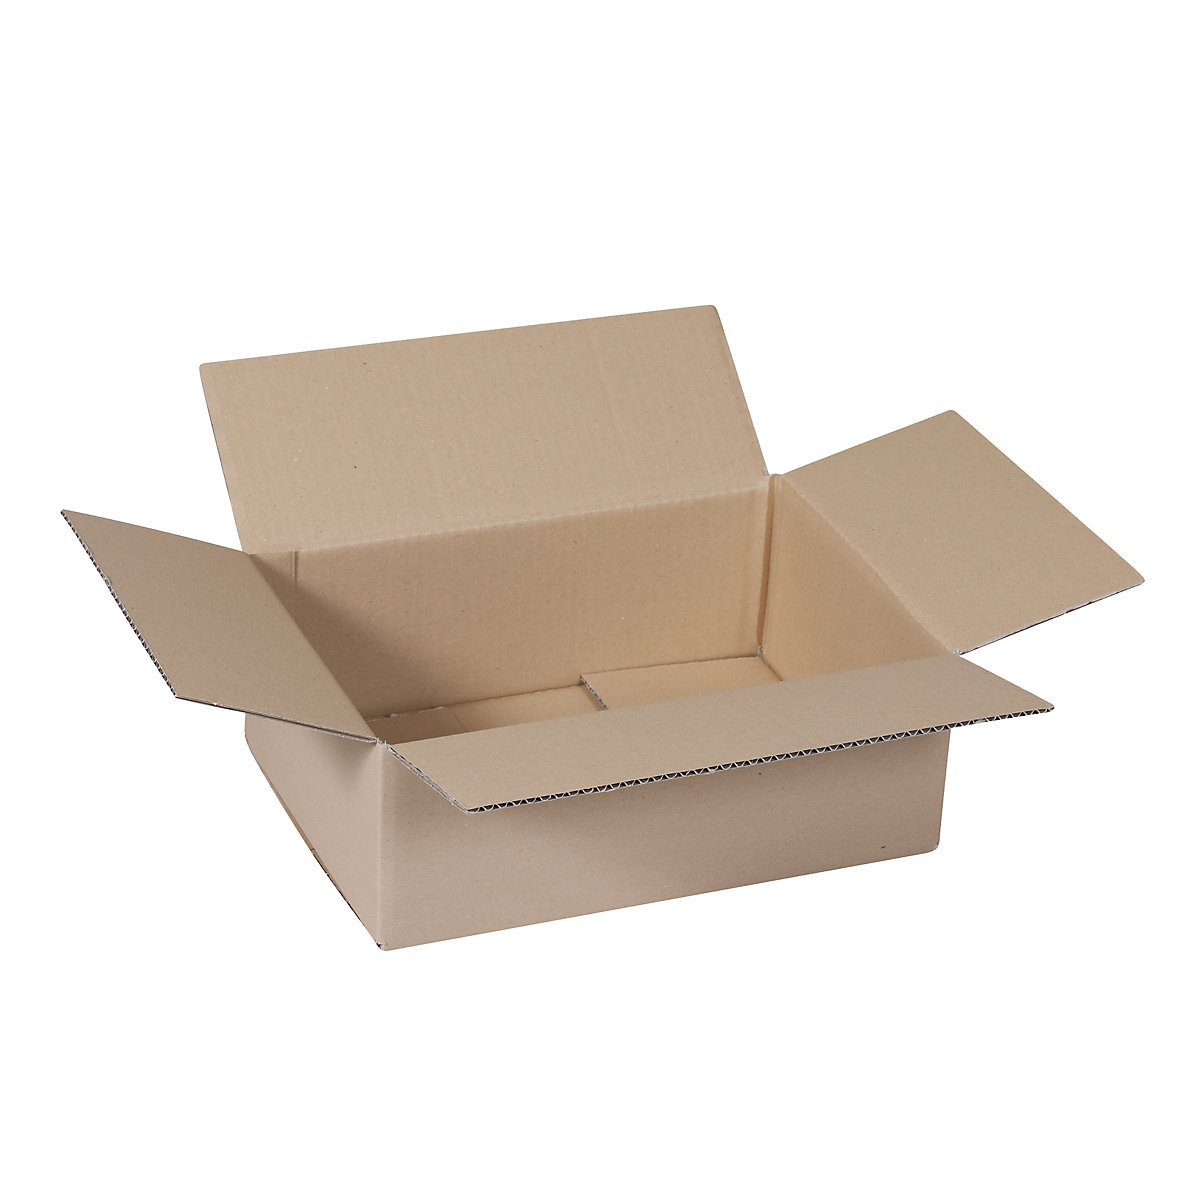 Cutie de carton pliantă, FEFCO 0201, cu 1 strat de carton ondulat, dimensiuni interioare 340 x 200 x 150 mm, amb. 50 buc.-14